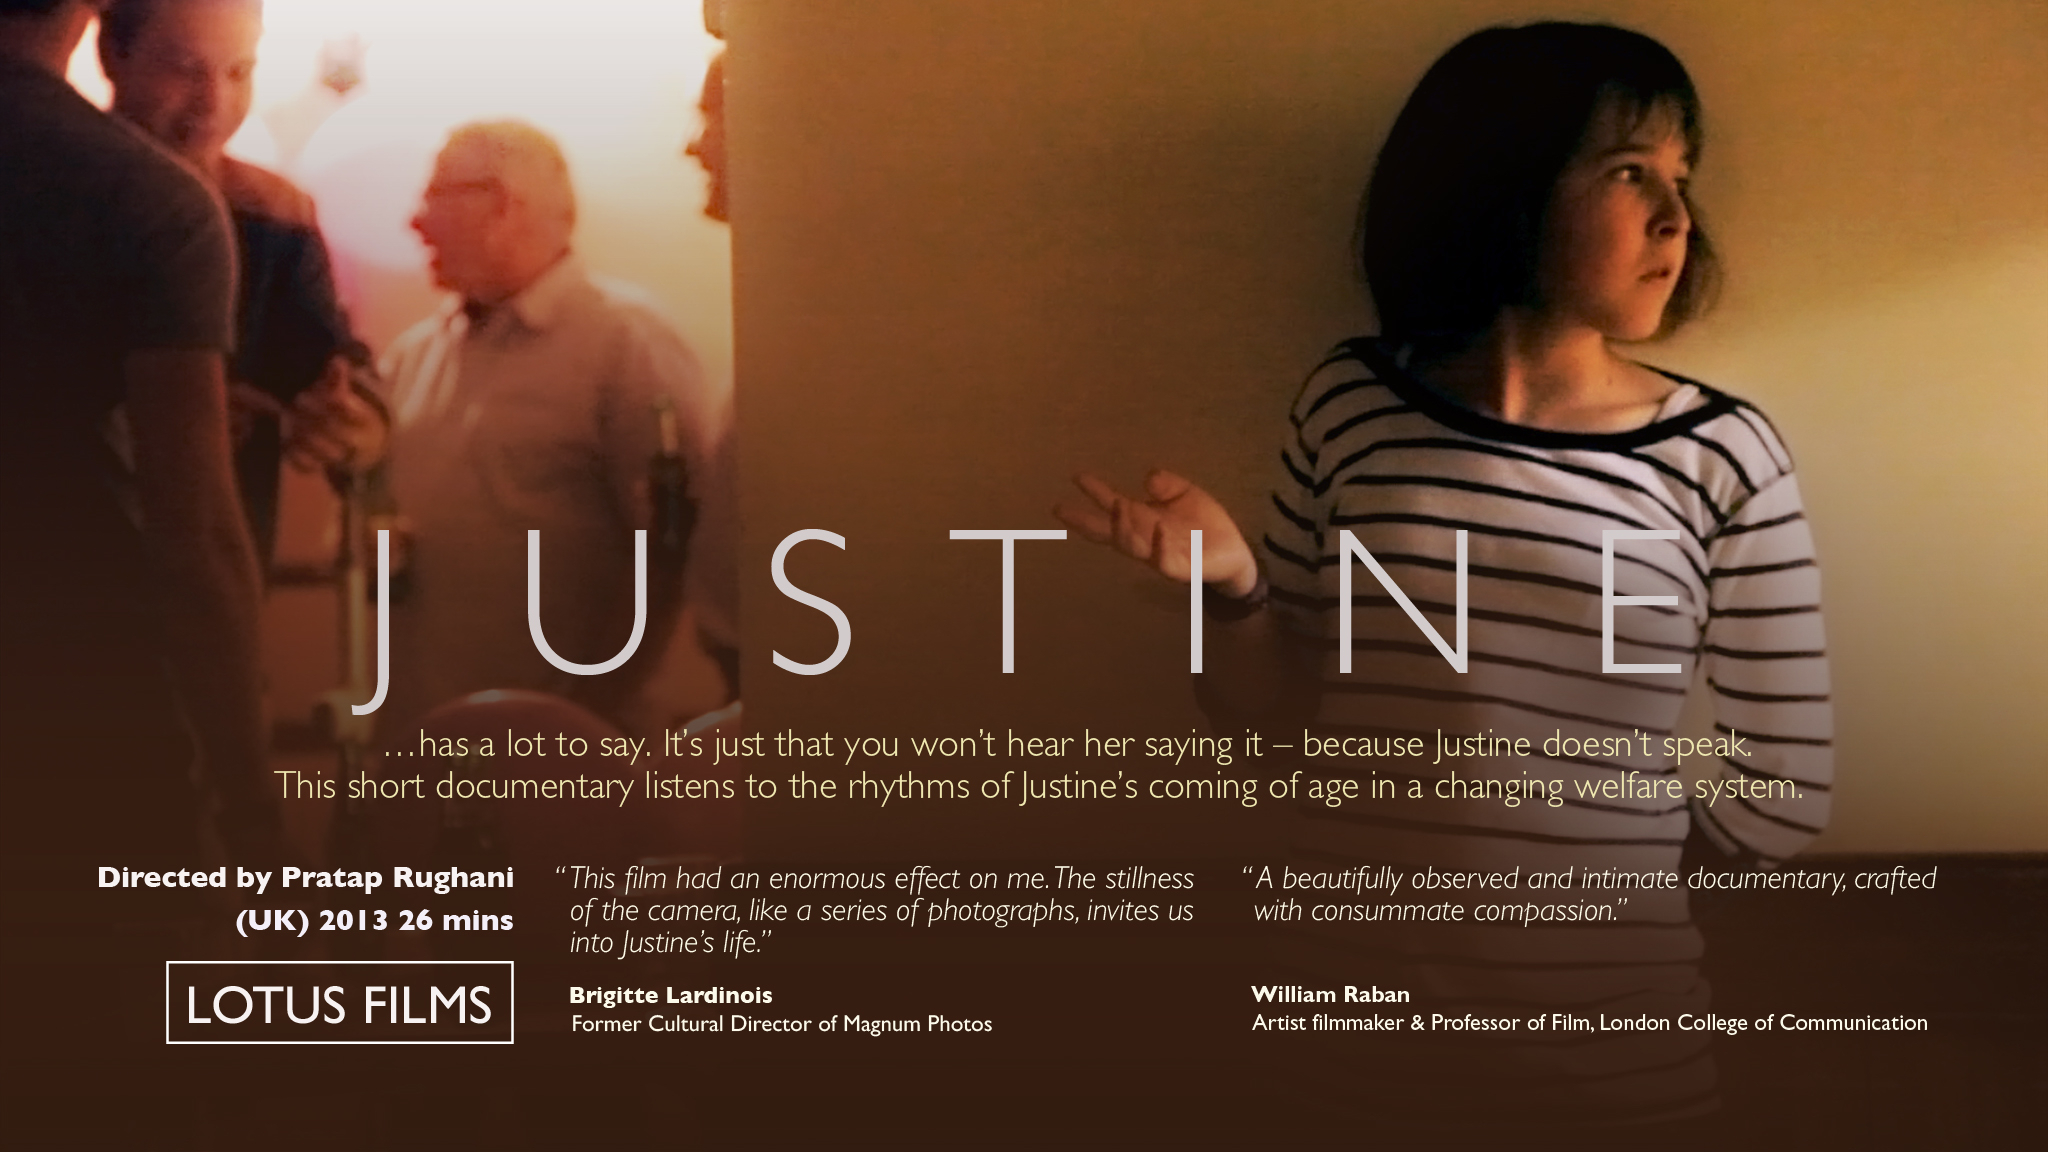 “Justine”: resources